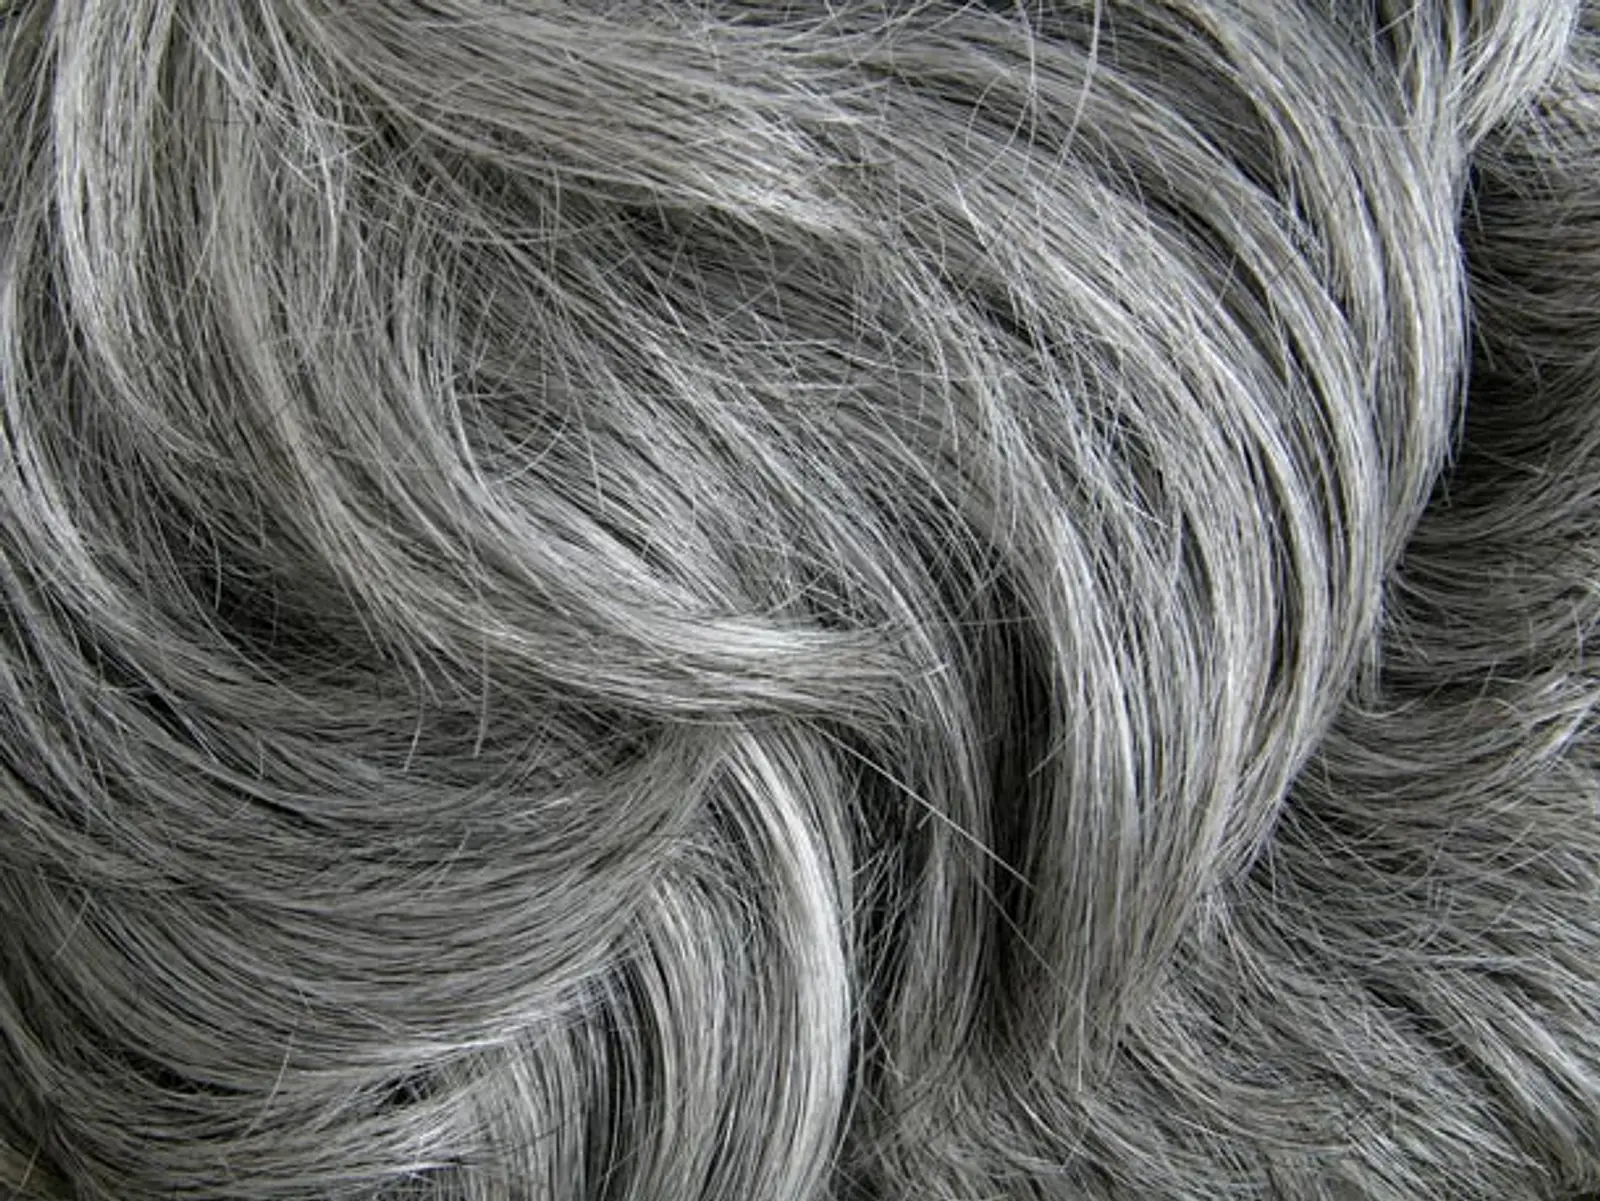 Wie oft graue haare tönen